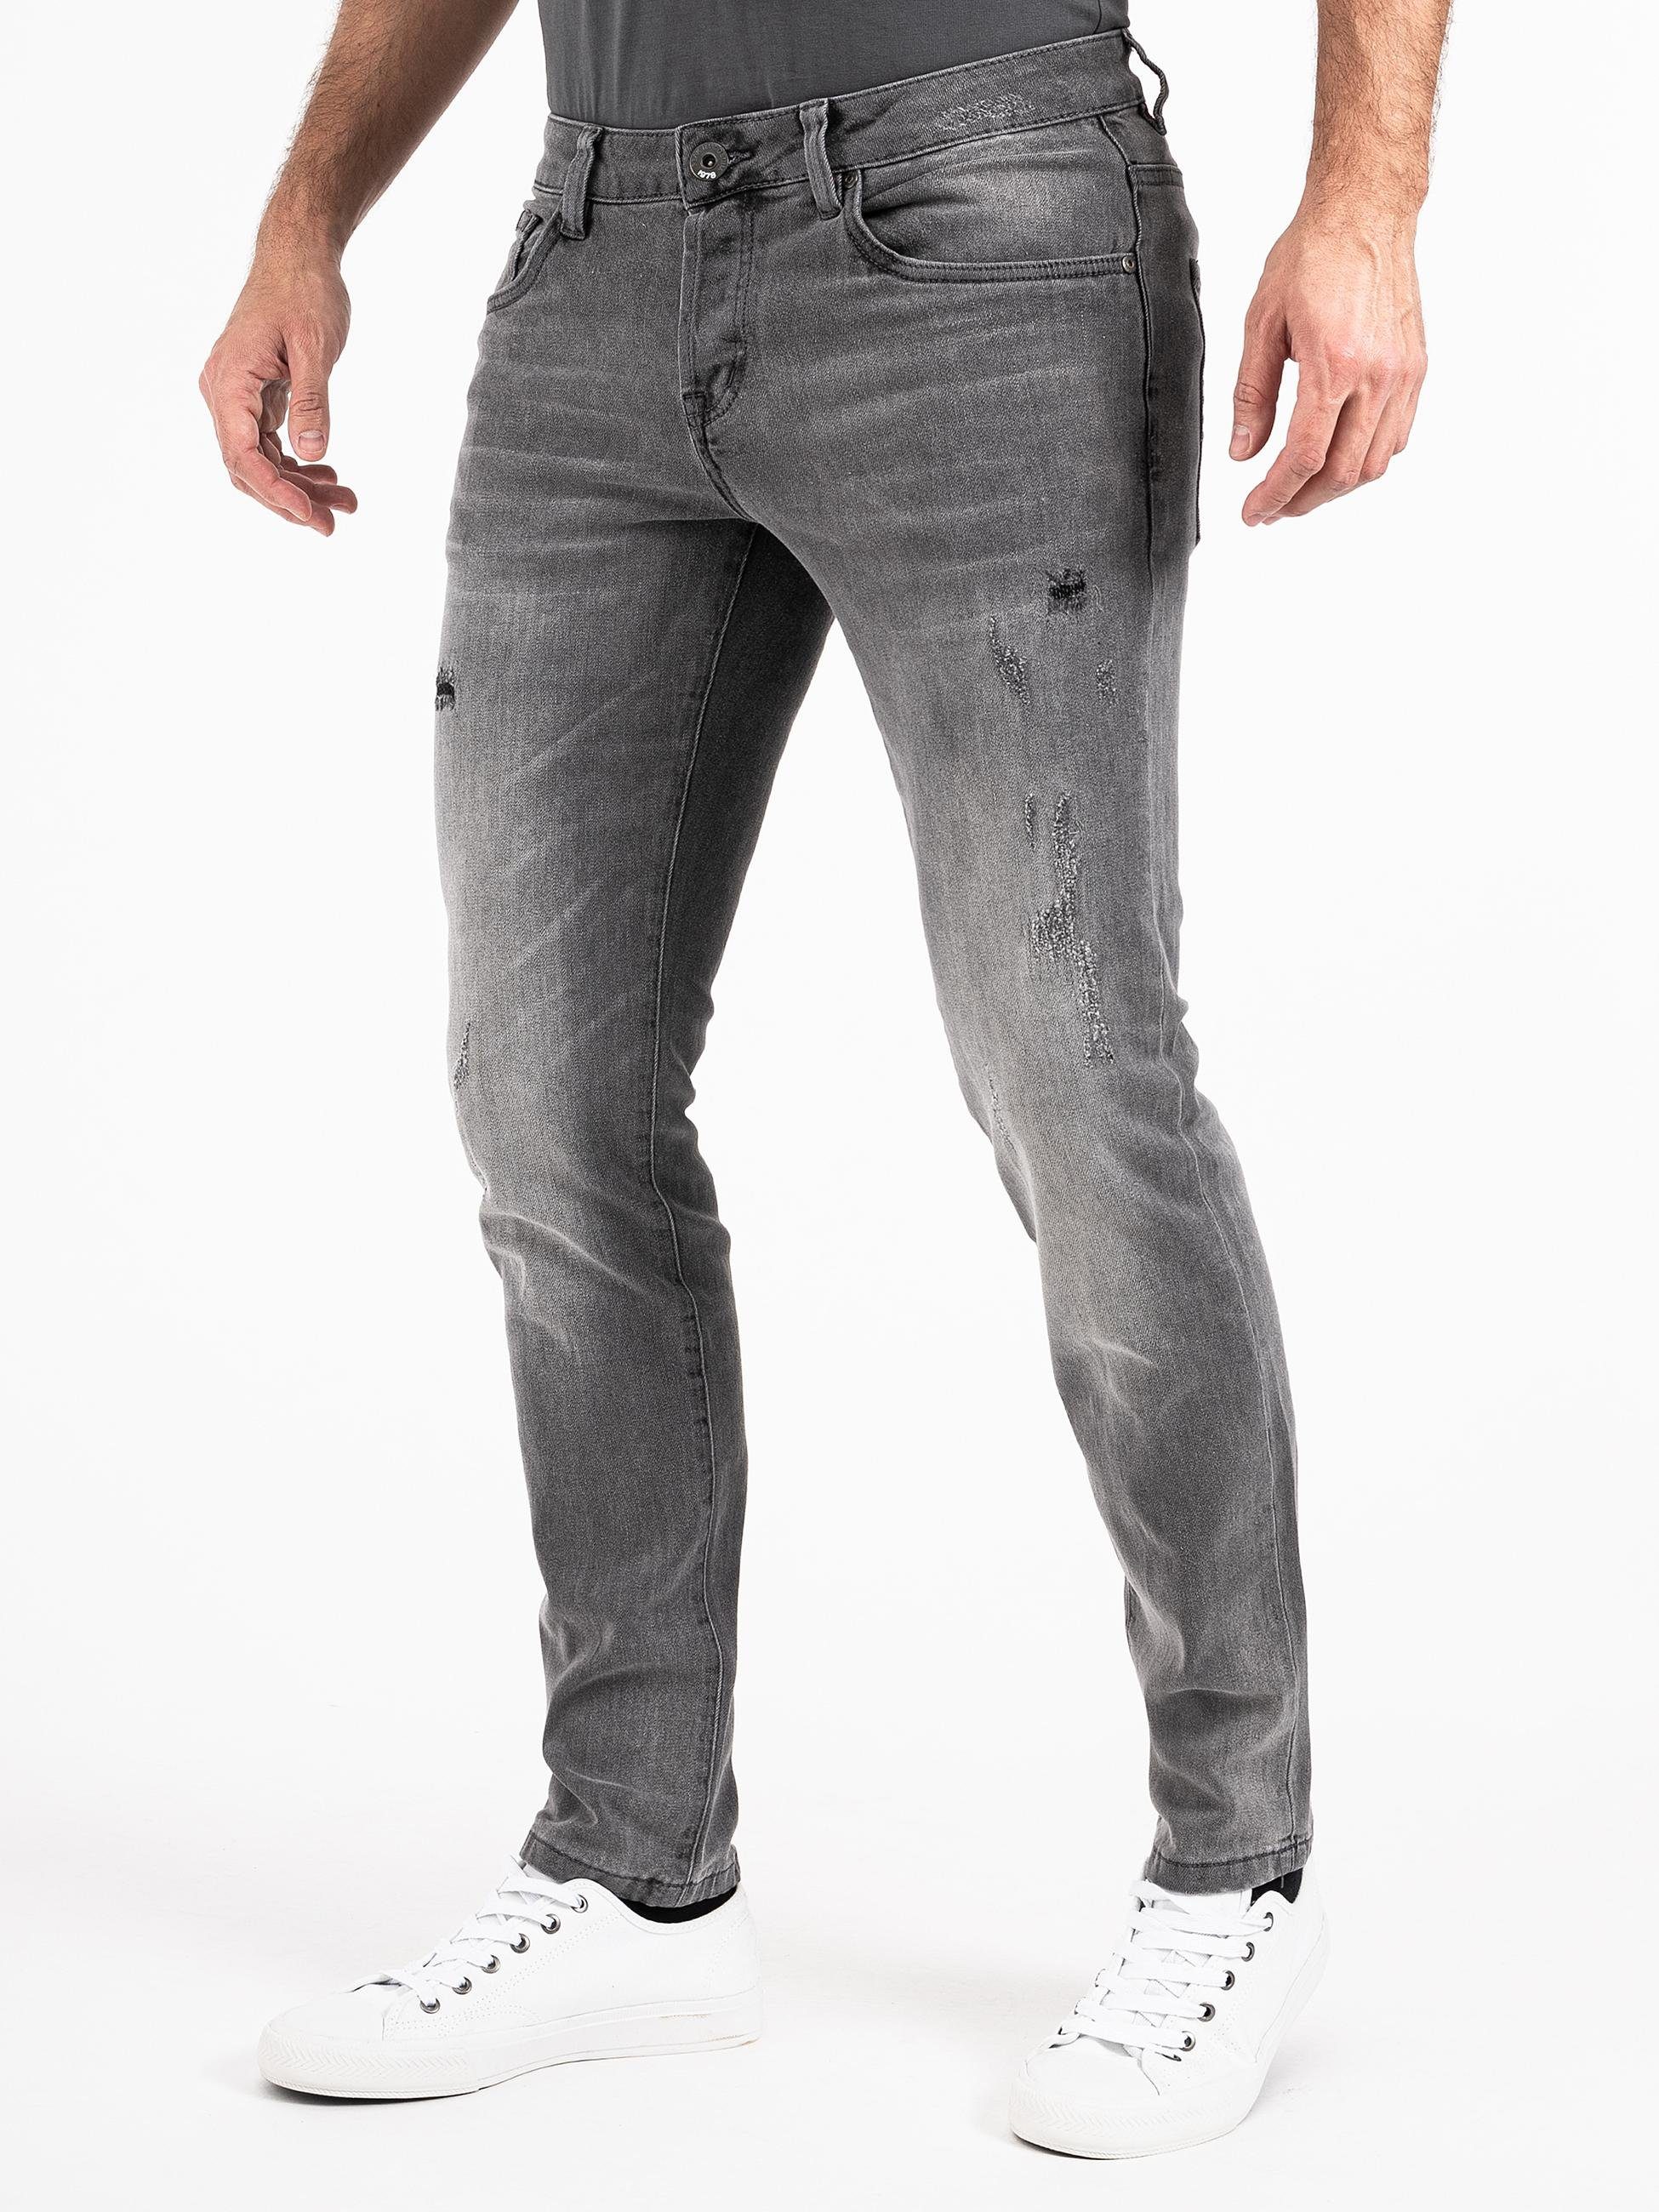 PEAK TIME Slim-fit-Jeans Jeans hellgrau München Herren mit Stretch-Bund Destroyed-Optik und